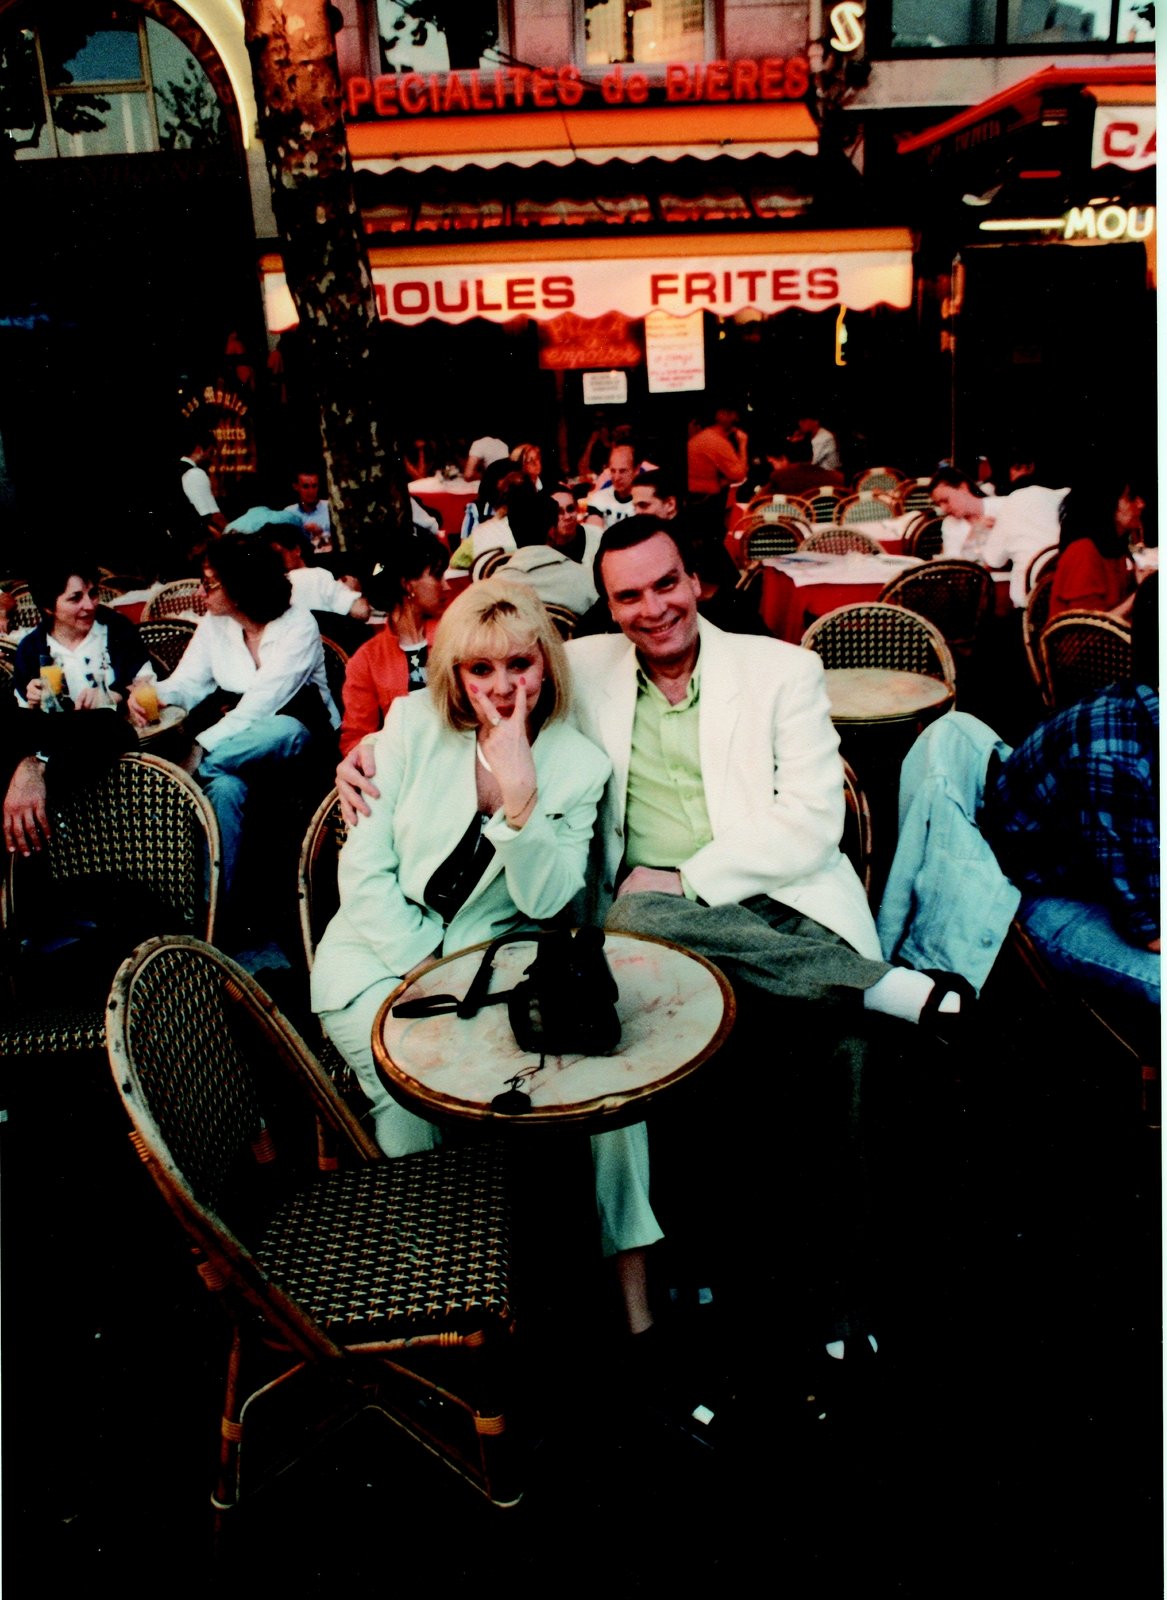 Romantiku si vychutnávali v Paříži hned několikrát.